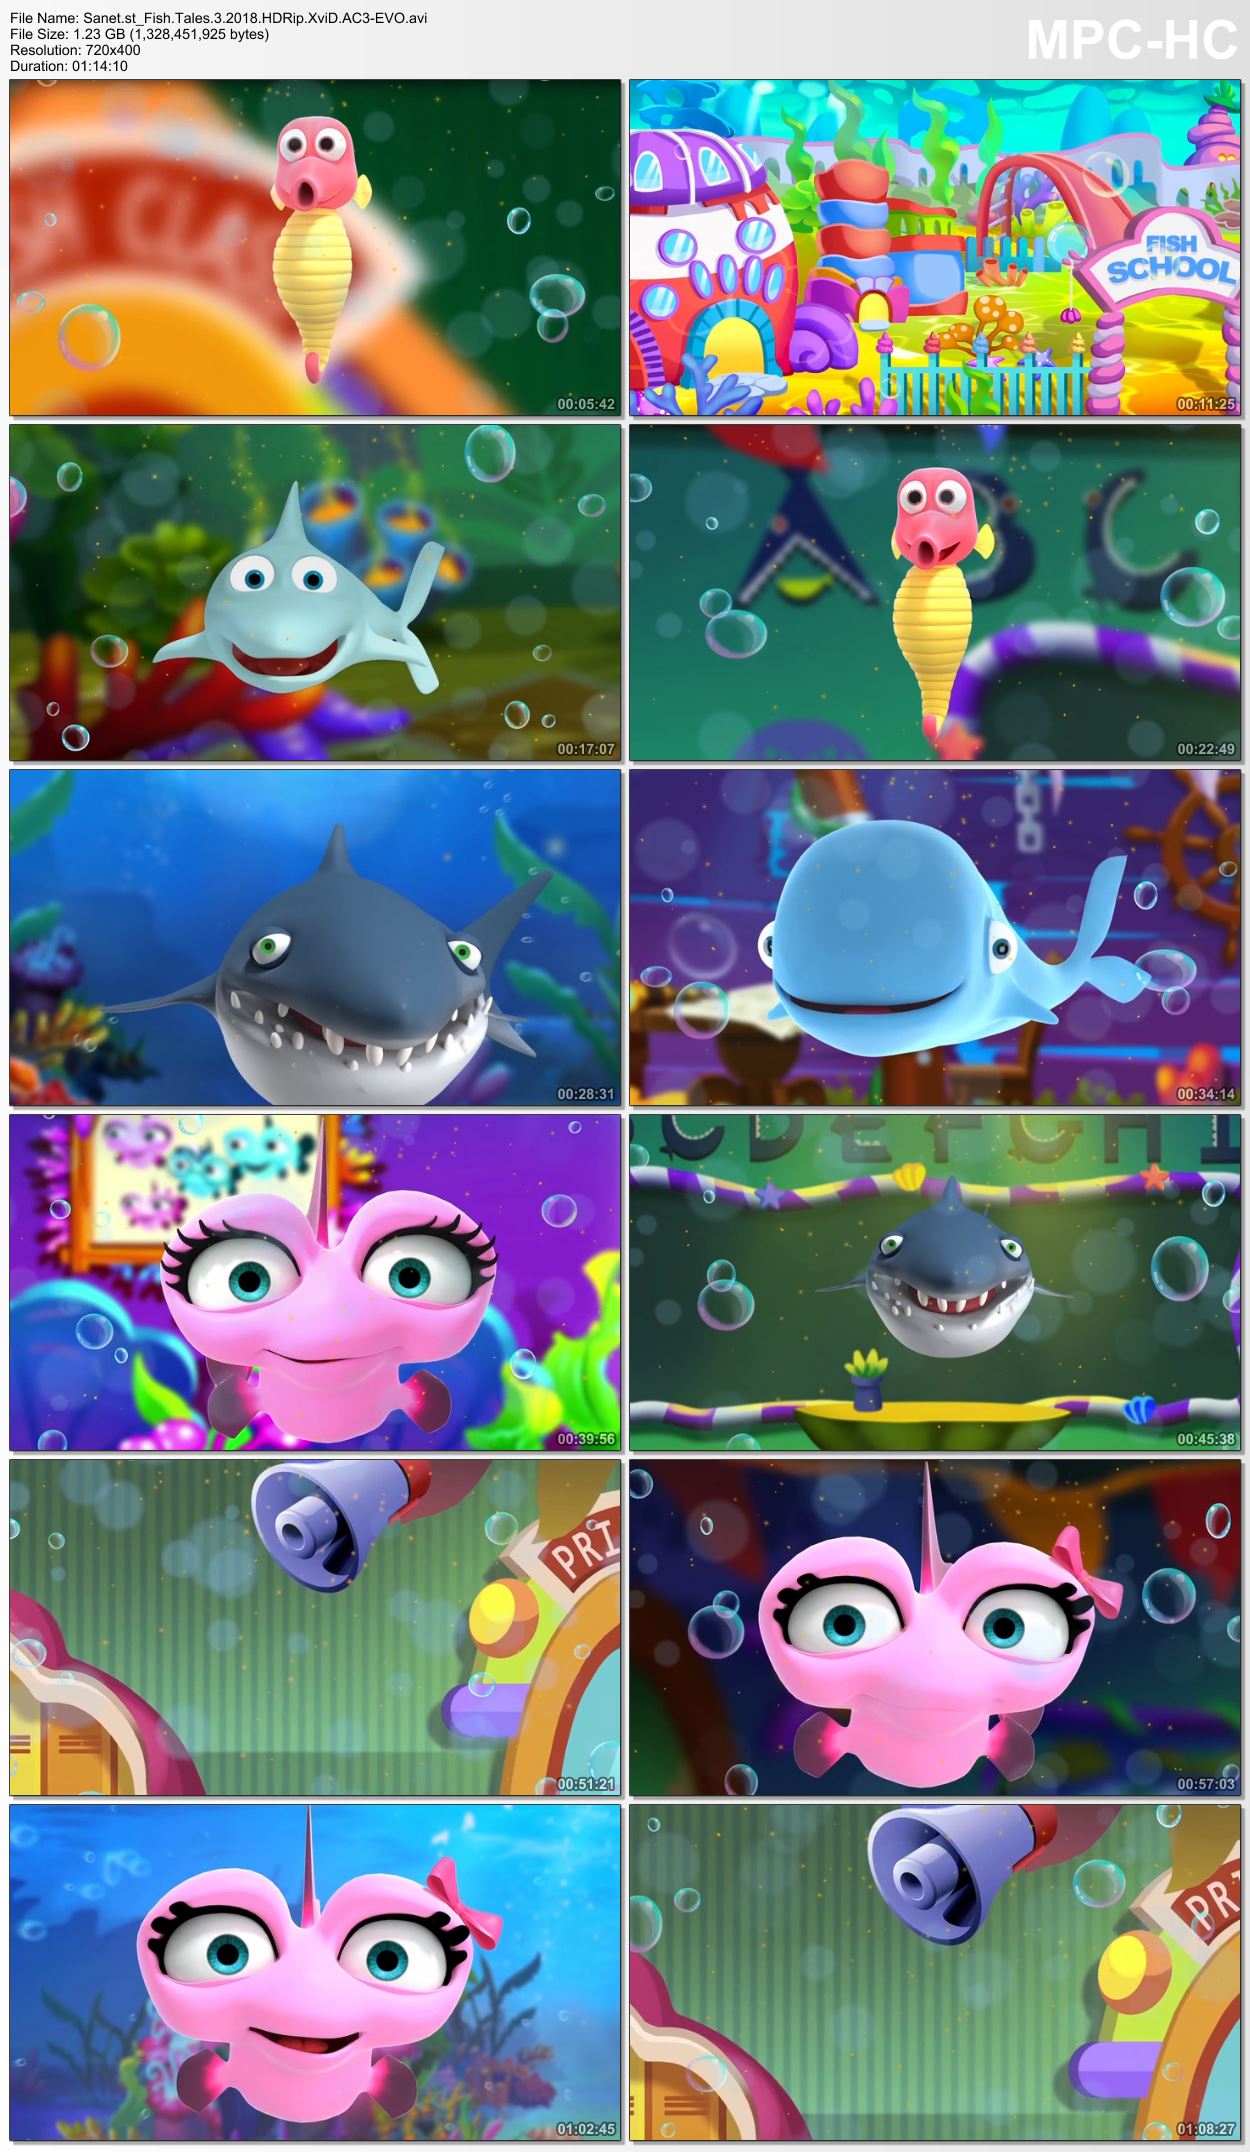 fish tales movie cast